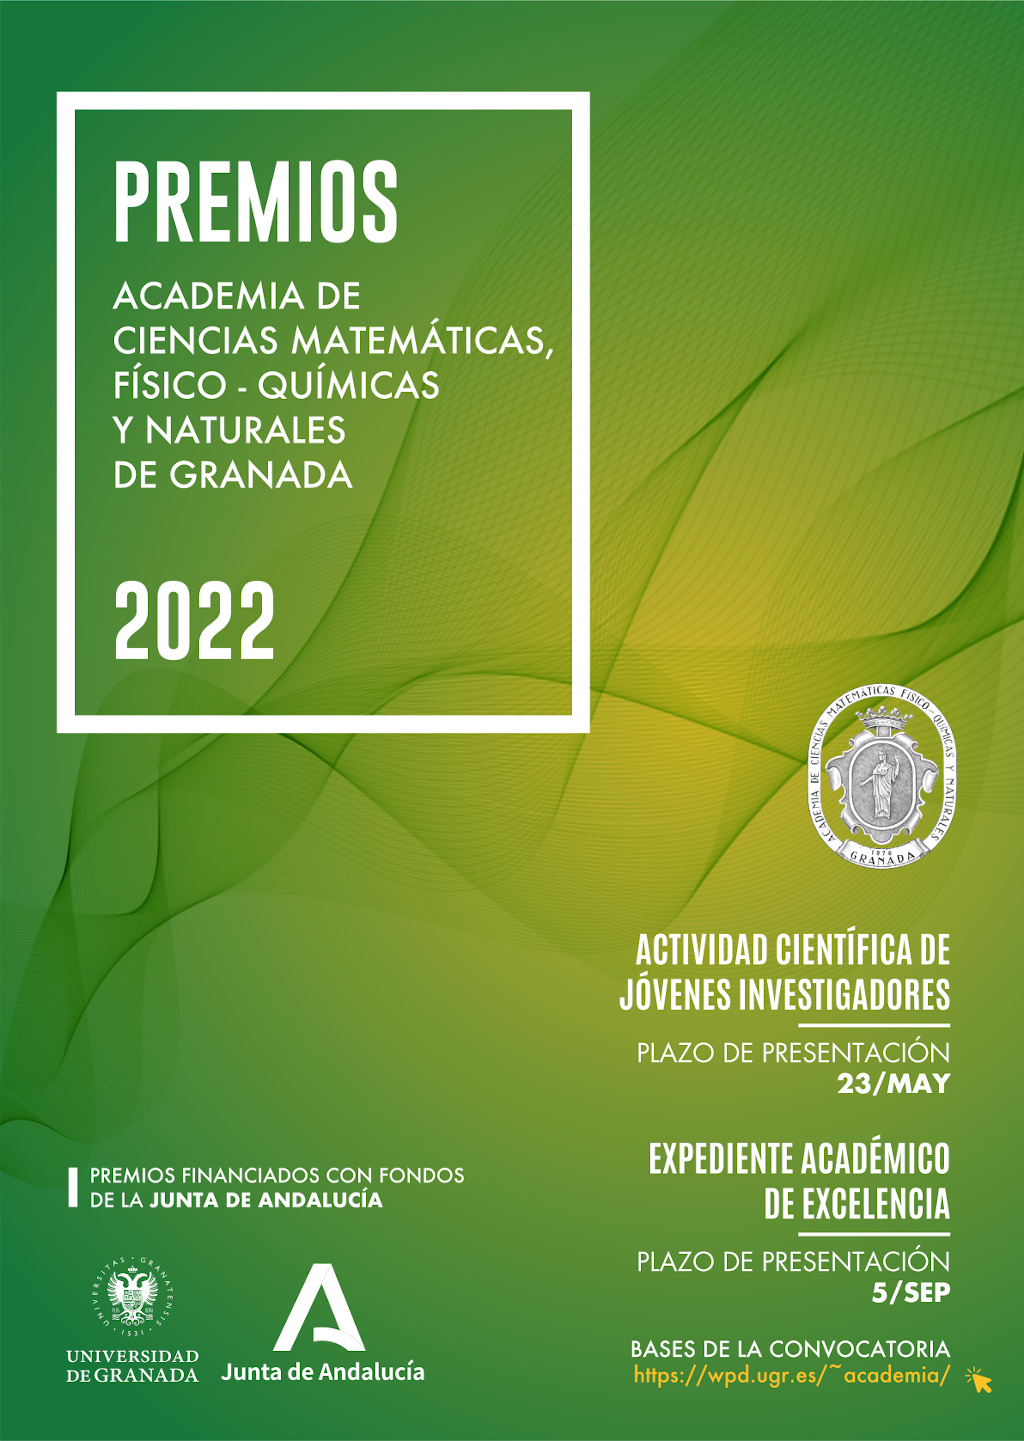 Convocatoria de premios de la Academia de Ciencias Matemáticas, Físico Químicas y Naturales de Granada. Edición 2022